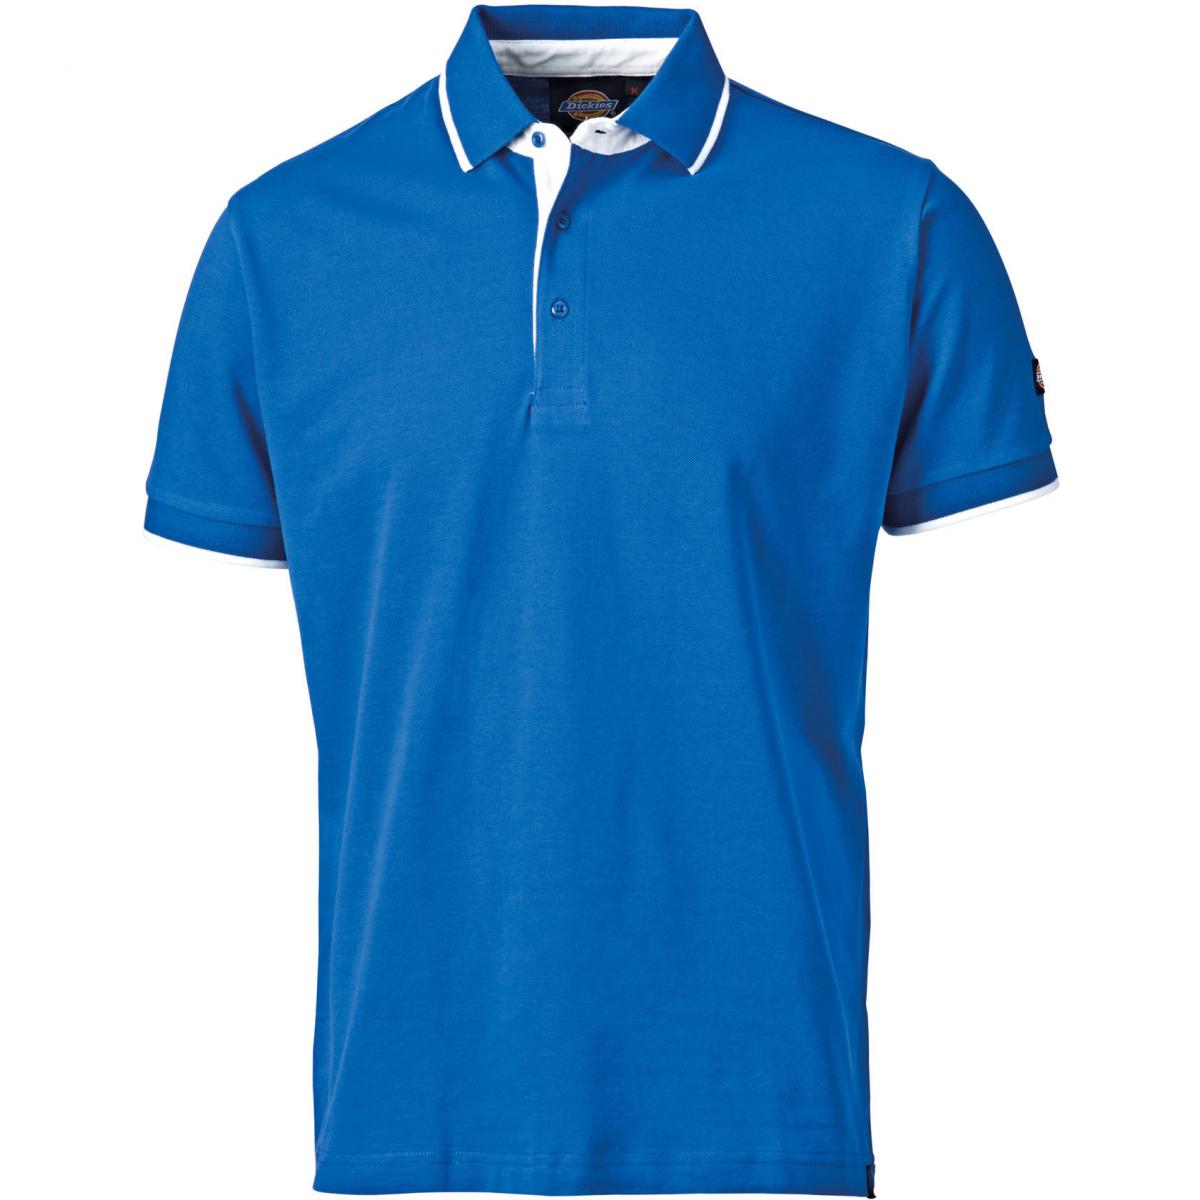 Hersteller: Dickies Herstellernummer: DT2000 Artikelbezeichnung: Worker Polo Anvil - Herren Poloshirt Farbe: Blau